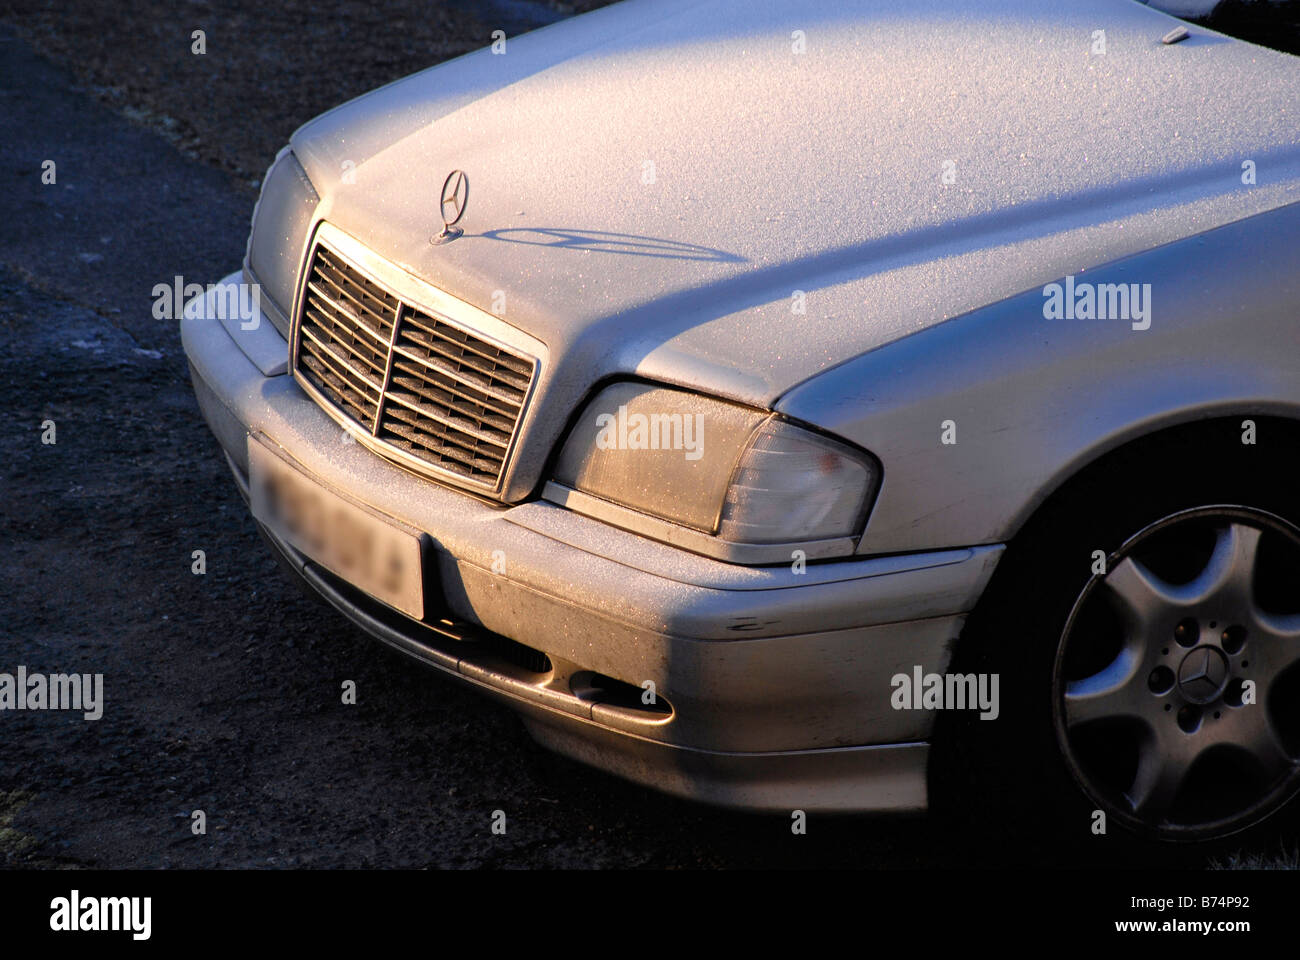 Sole che splende su ghiaccio sul cofano di argento auto Mercedes, con ombra di Mercedes logo sul cofano Foto Stock